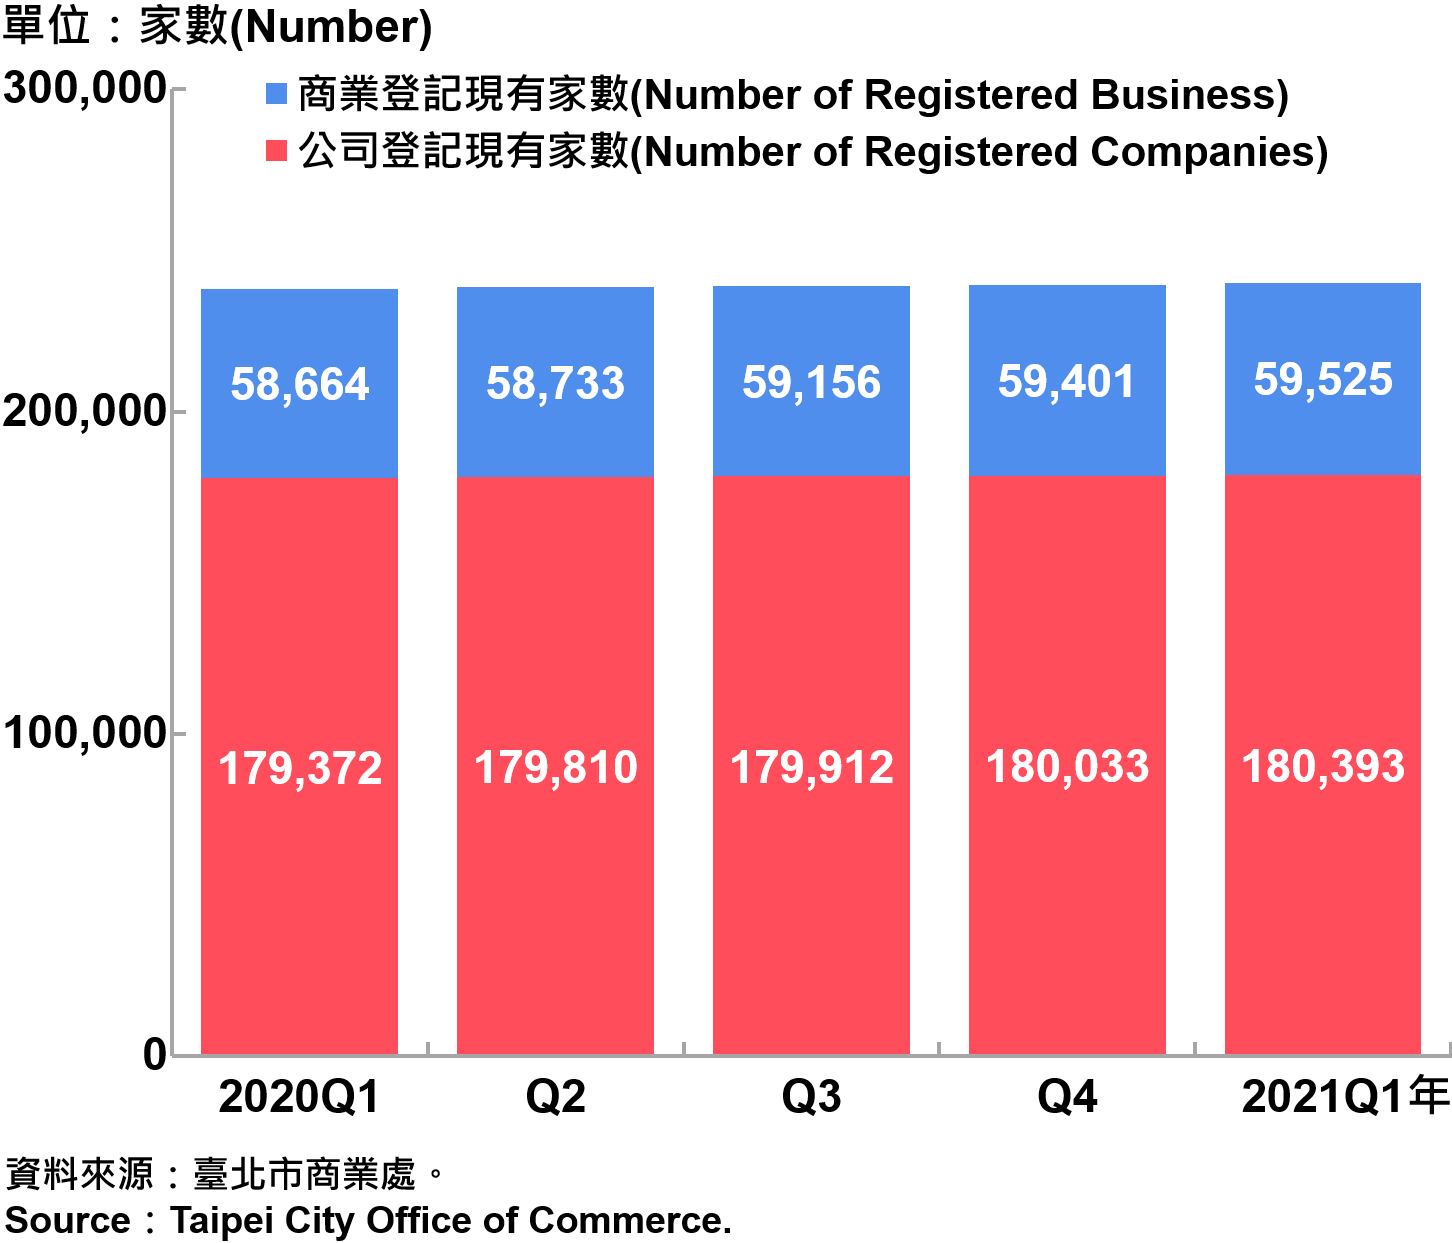 臺北市工商登記—2021Q1 Industry & Commerce Registration in Taipei—2021Q1